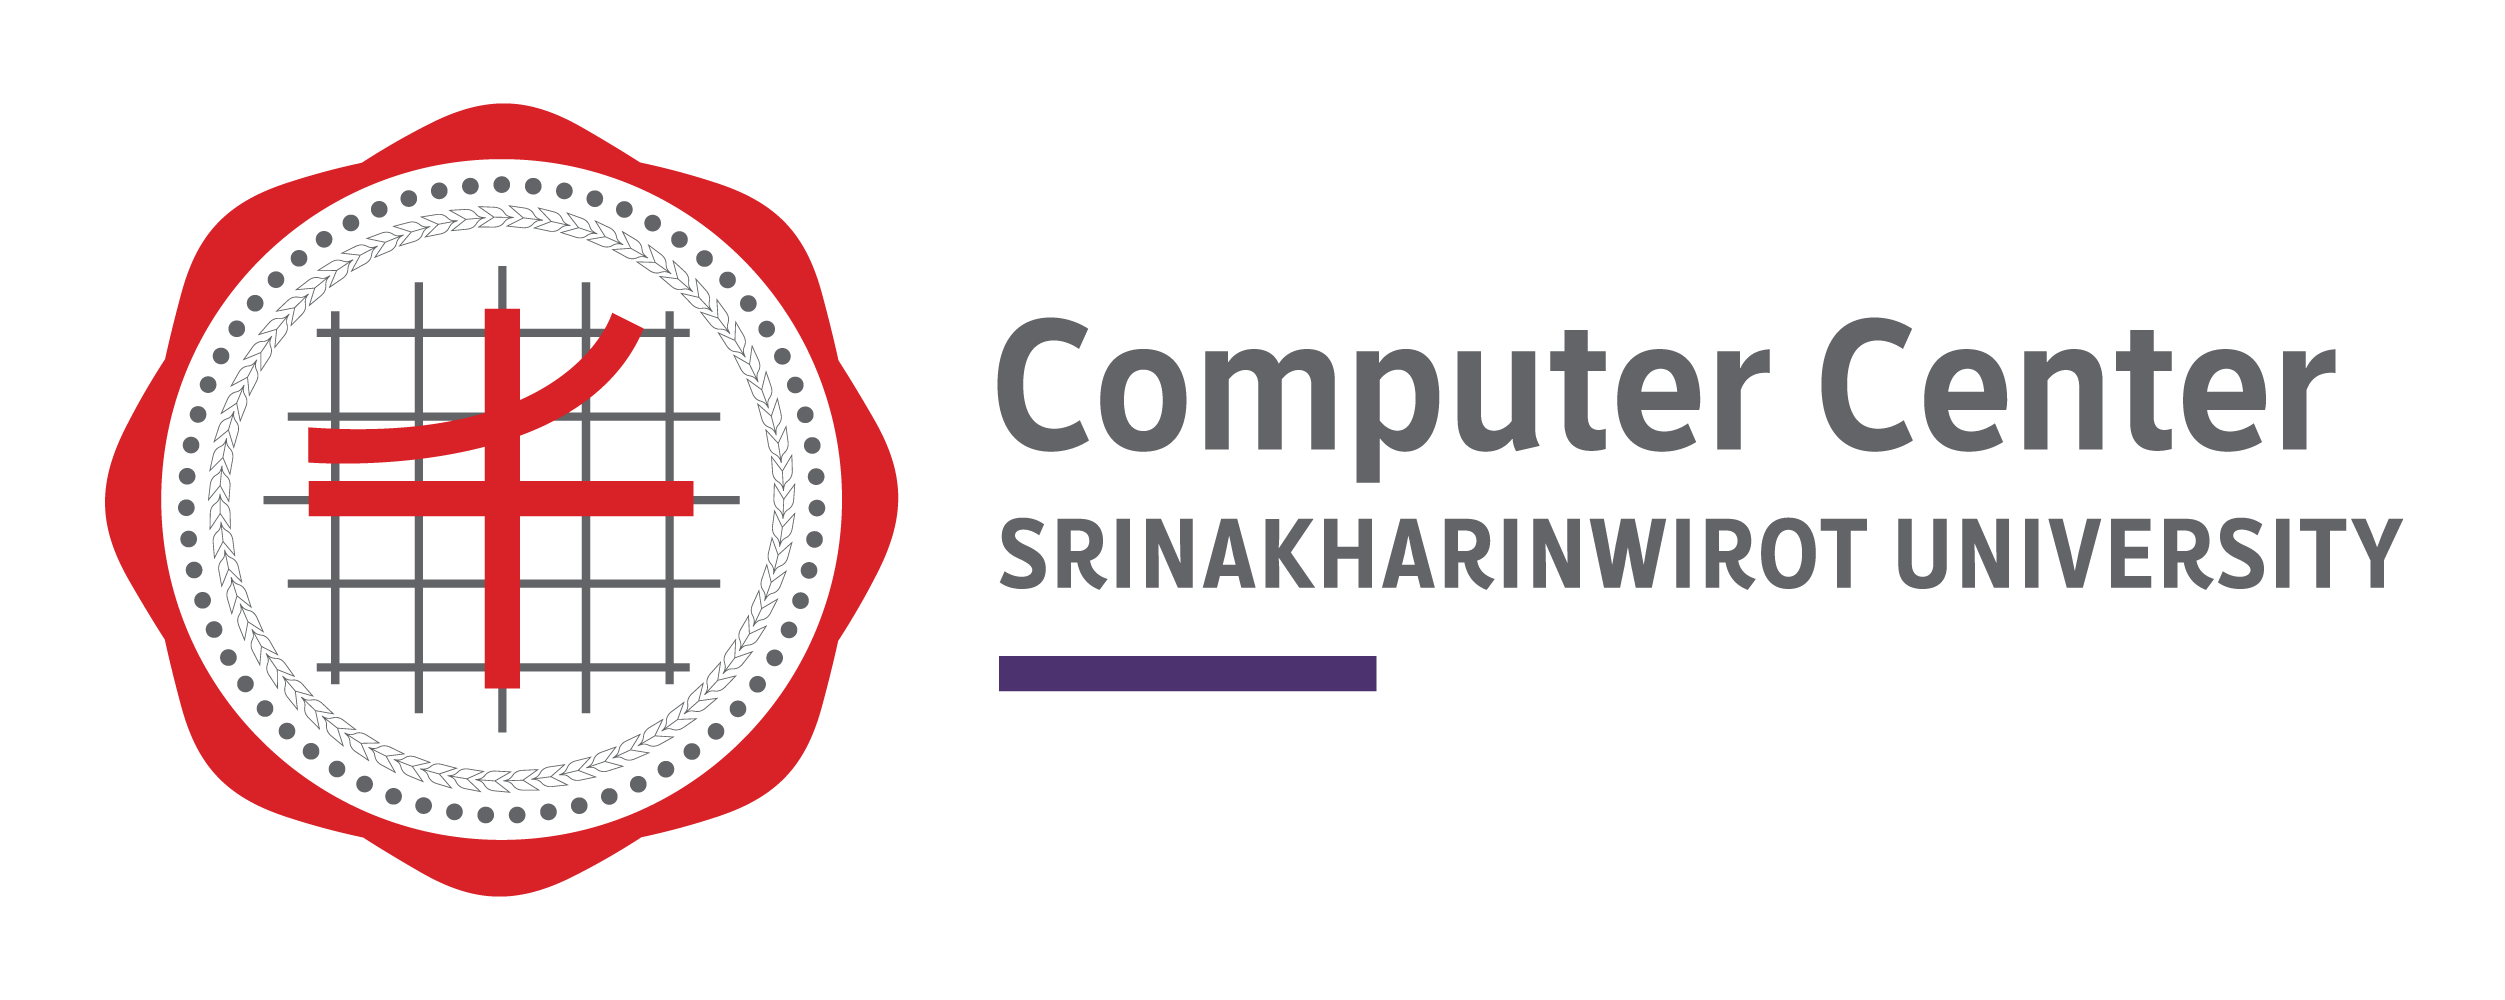 Computer Center, Srinakharinwirot University